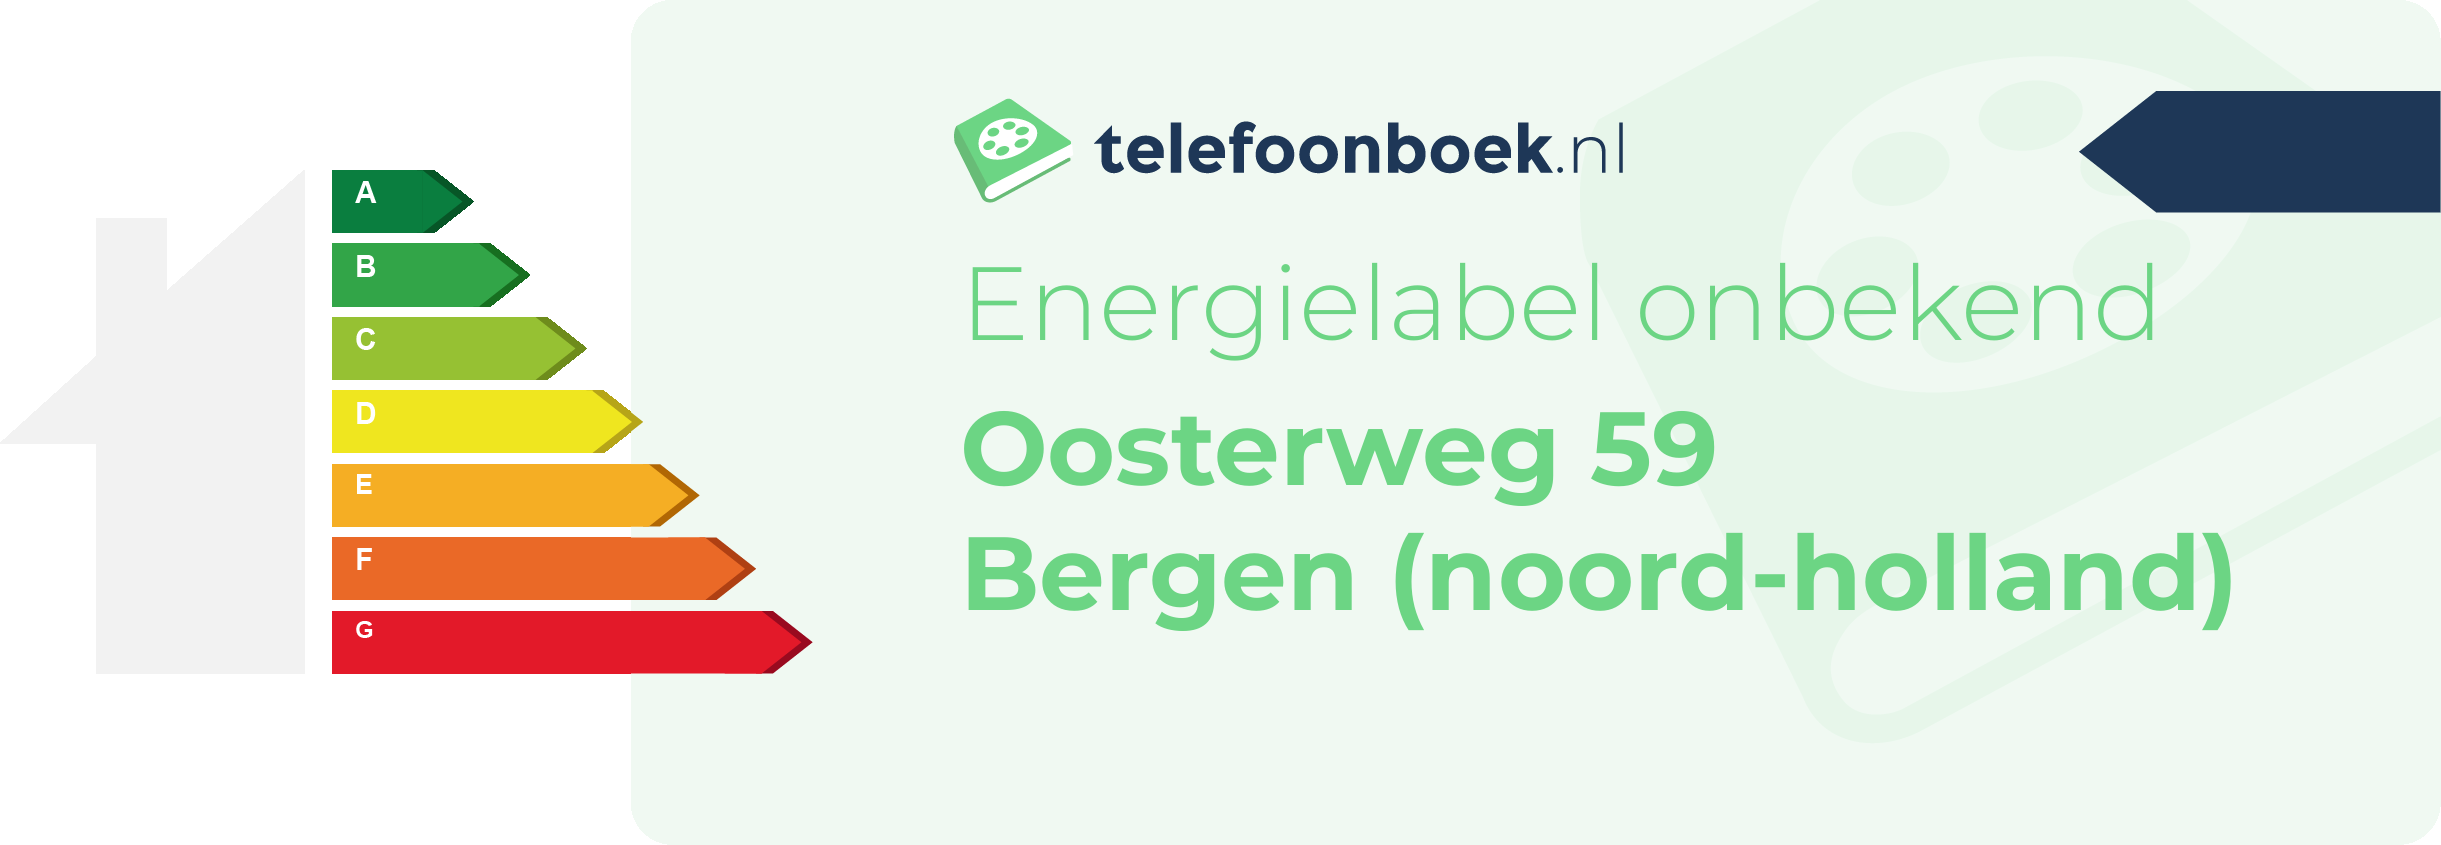 Energielabel Oosterweg 59 Bergen (Noord-Holland)